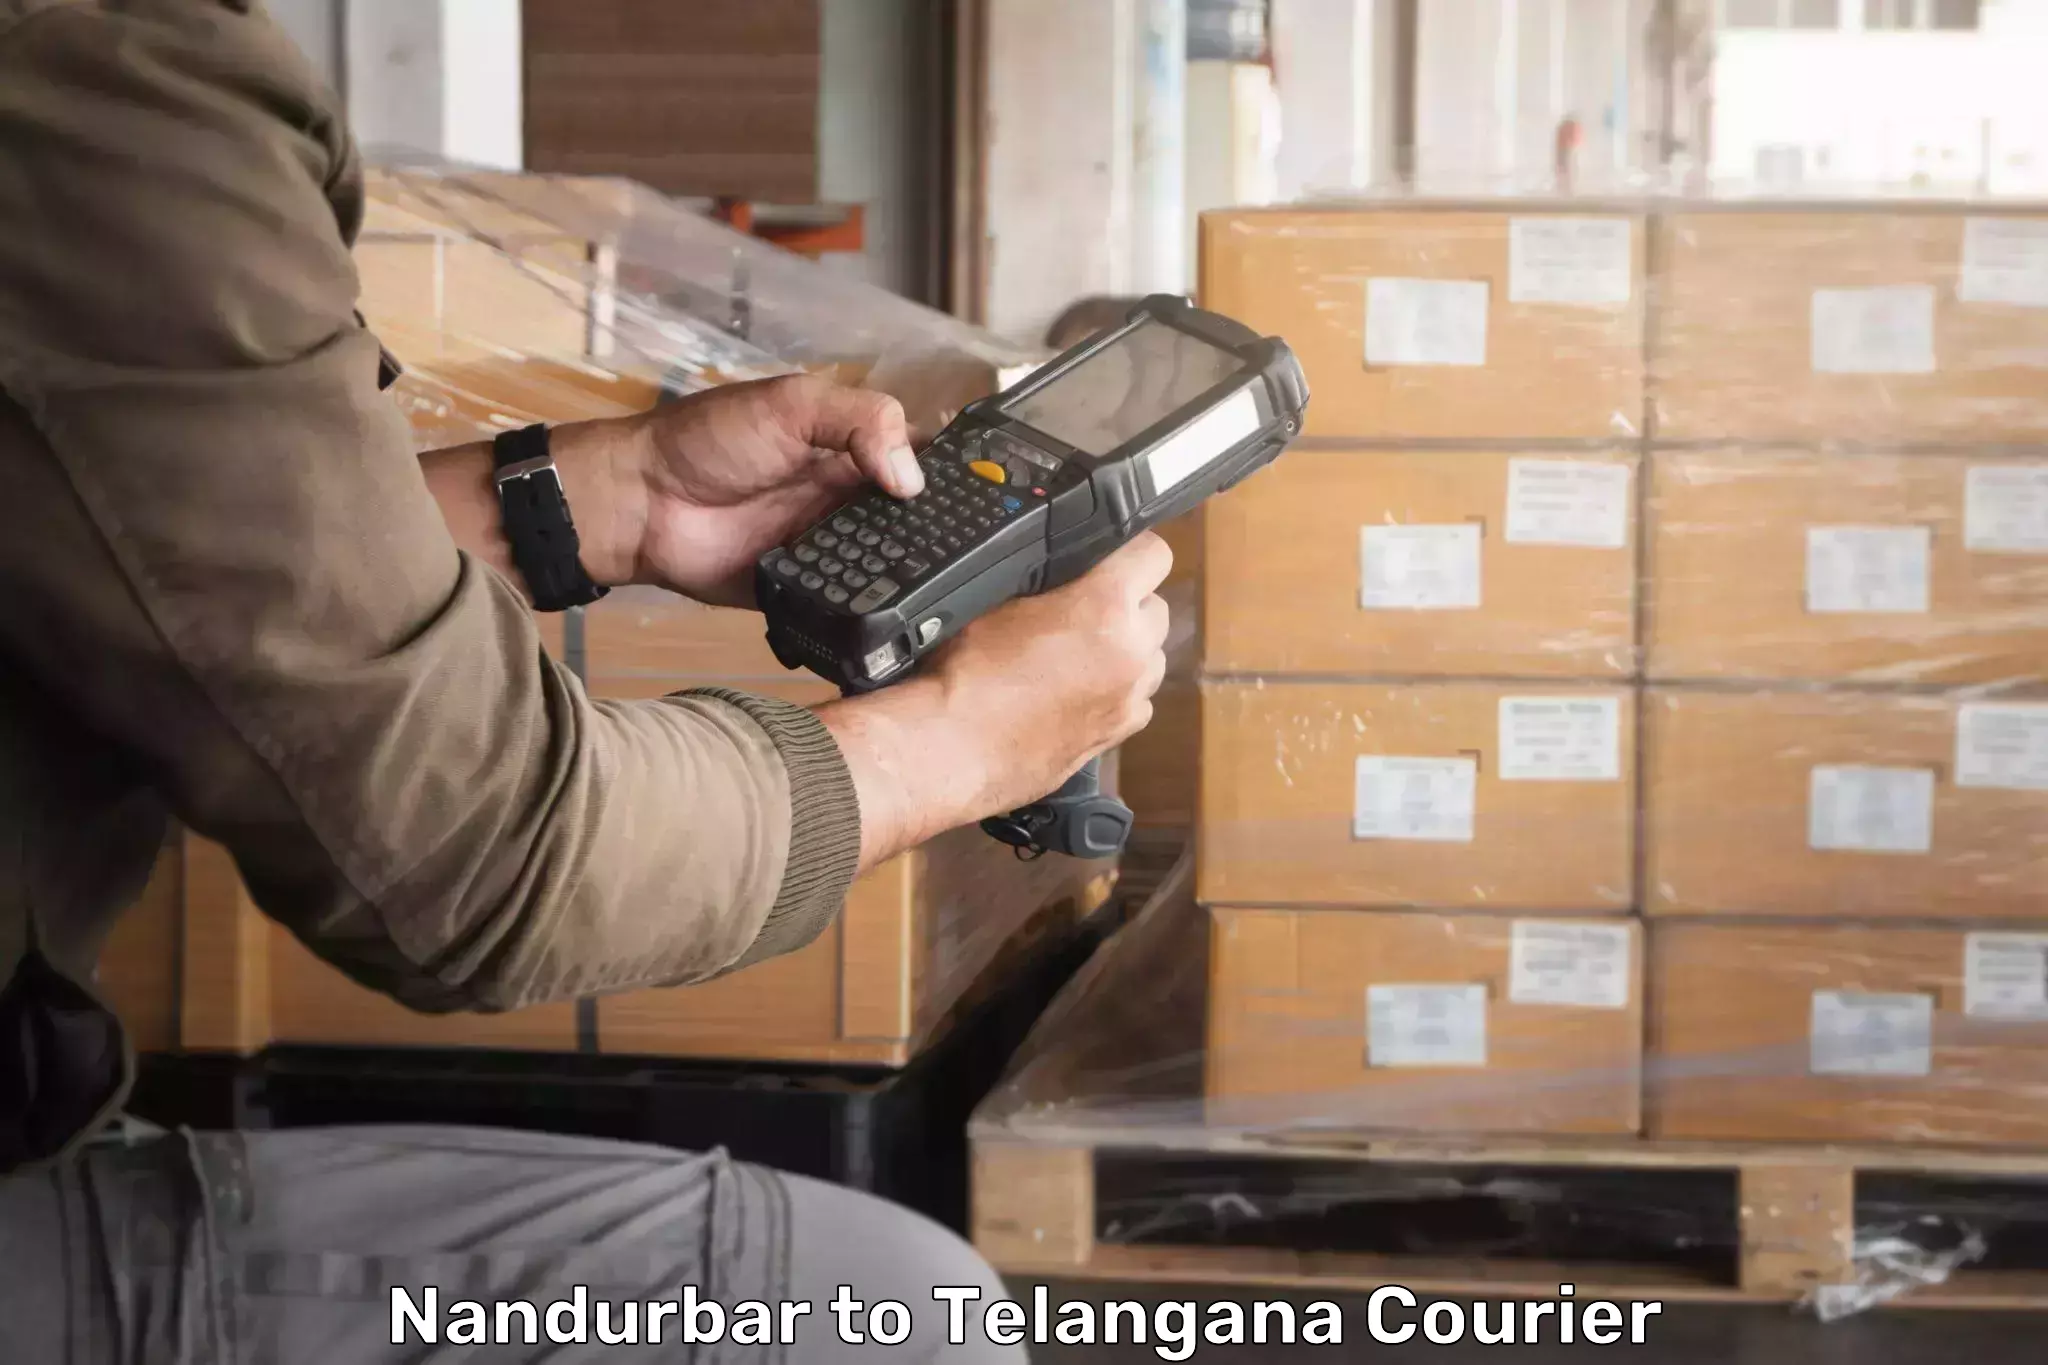 Track and trace shipping Nandurbar to Gangadhara